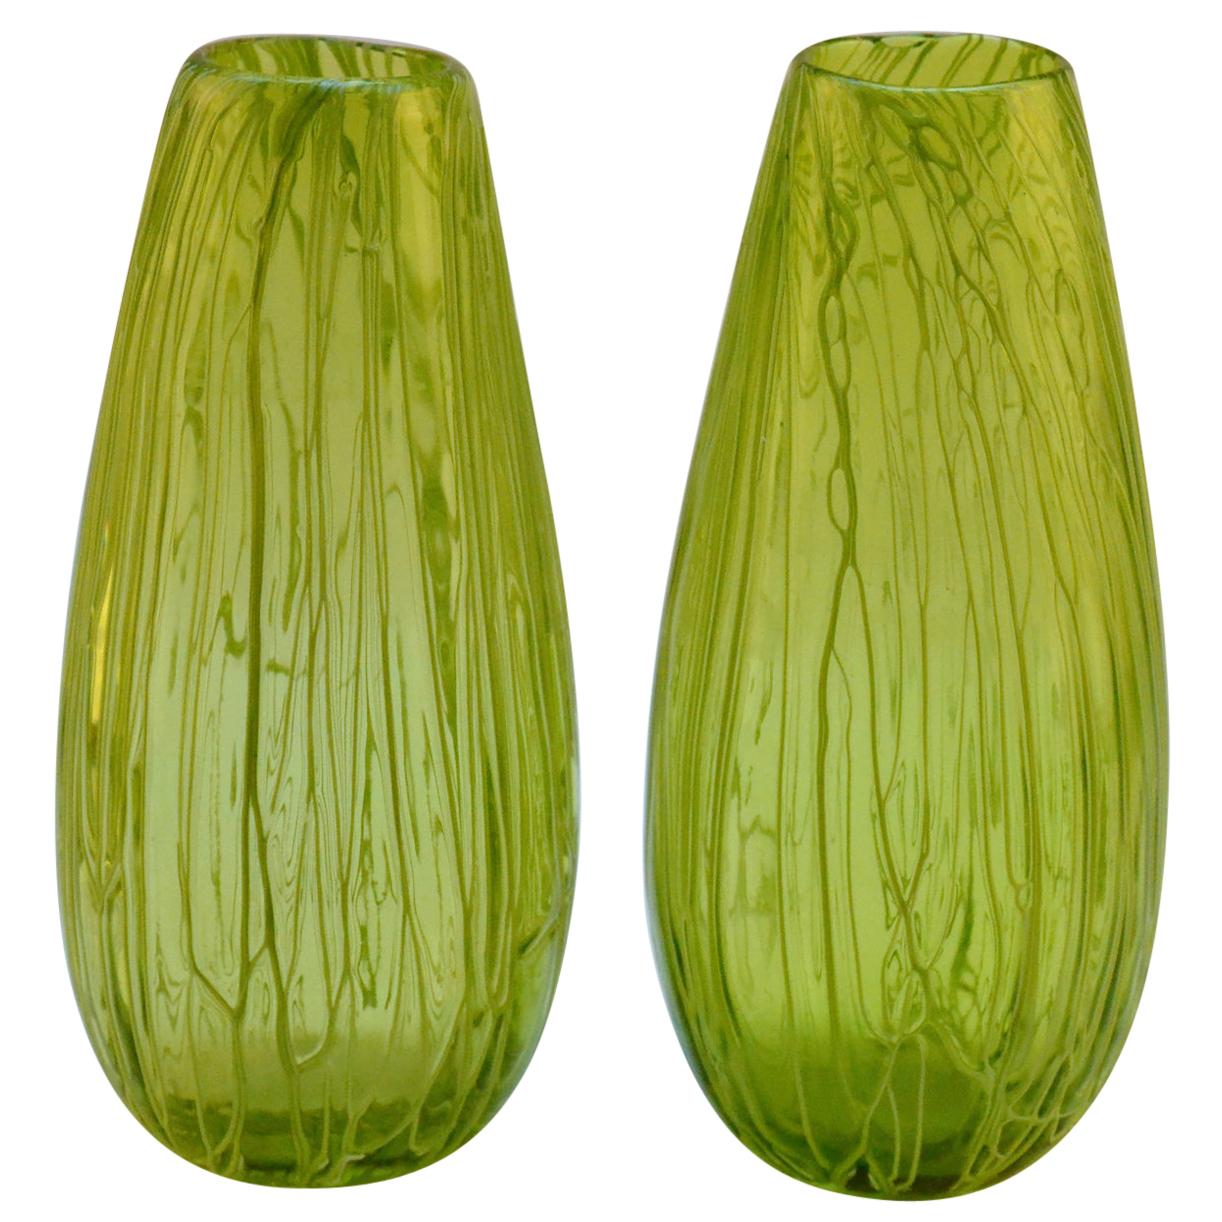 Paire de vases en verre soufflé à la main de couleur vert acide veiné